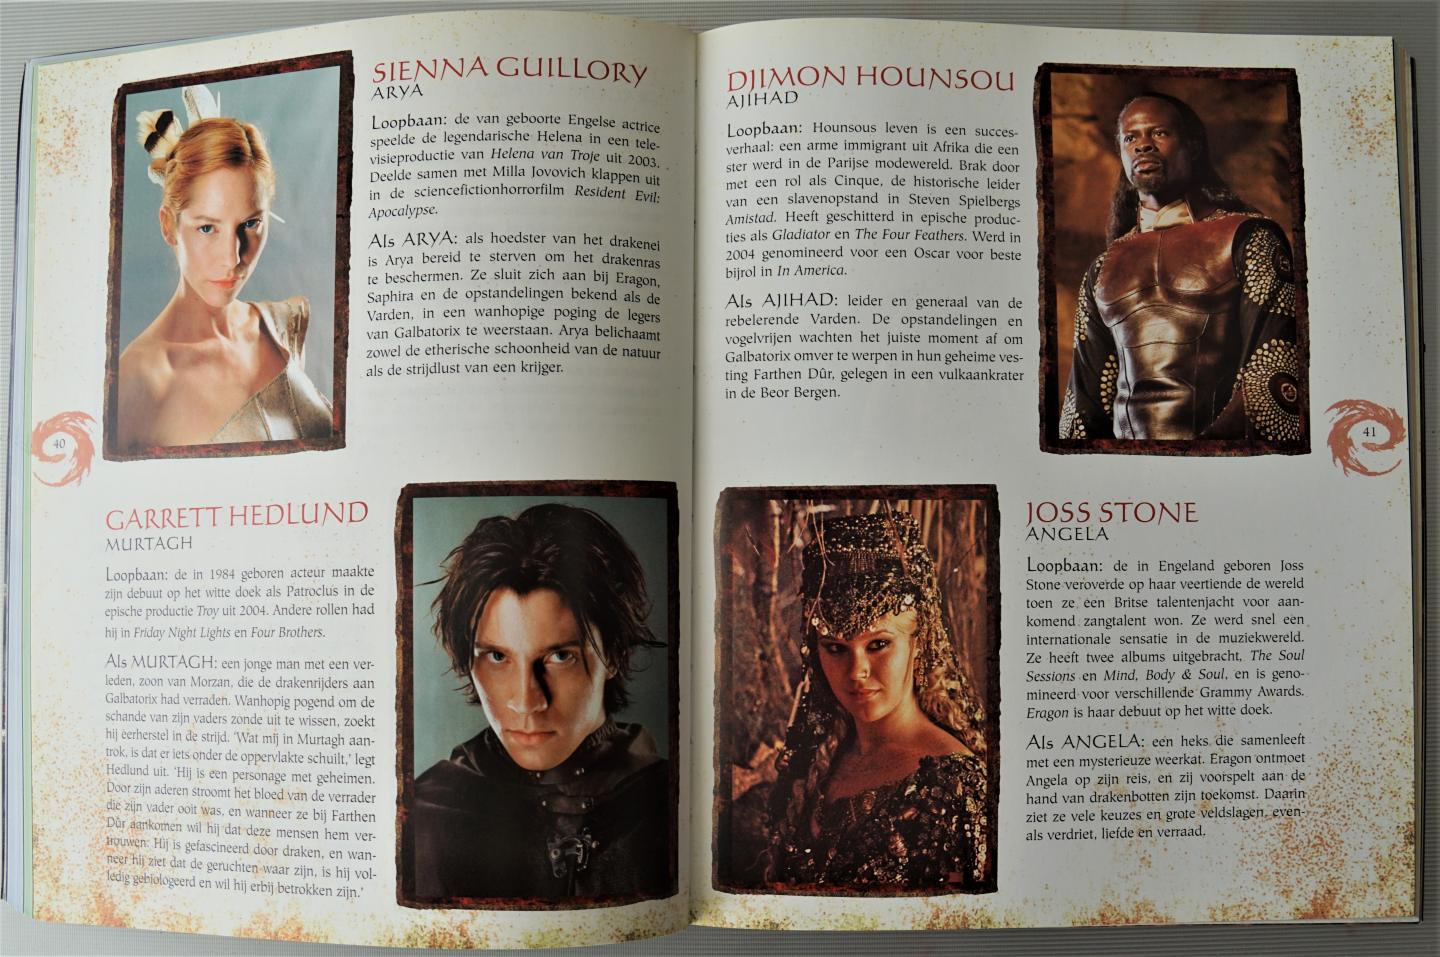 Cotta Vaz, M. - De making of eragon, een blik op de verfilming van de fantasy bestseller Eragon met ruim 100 unieke kleurenfoto's